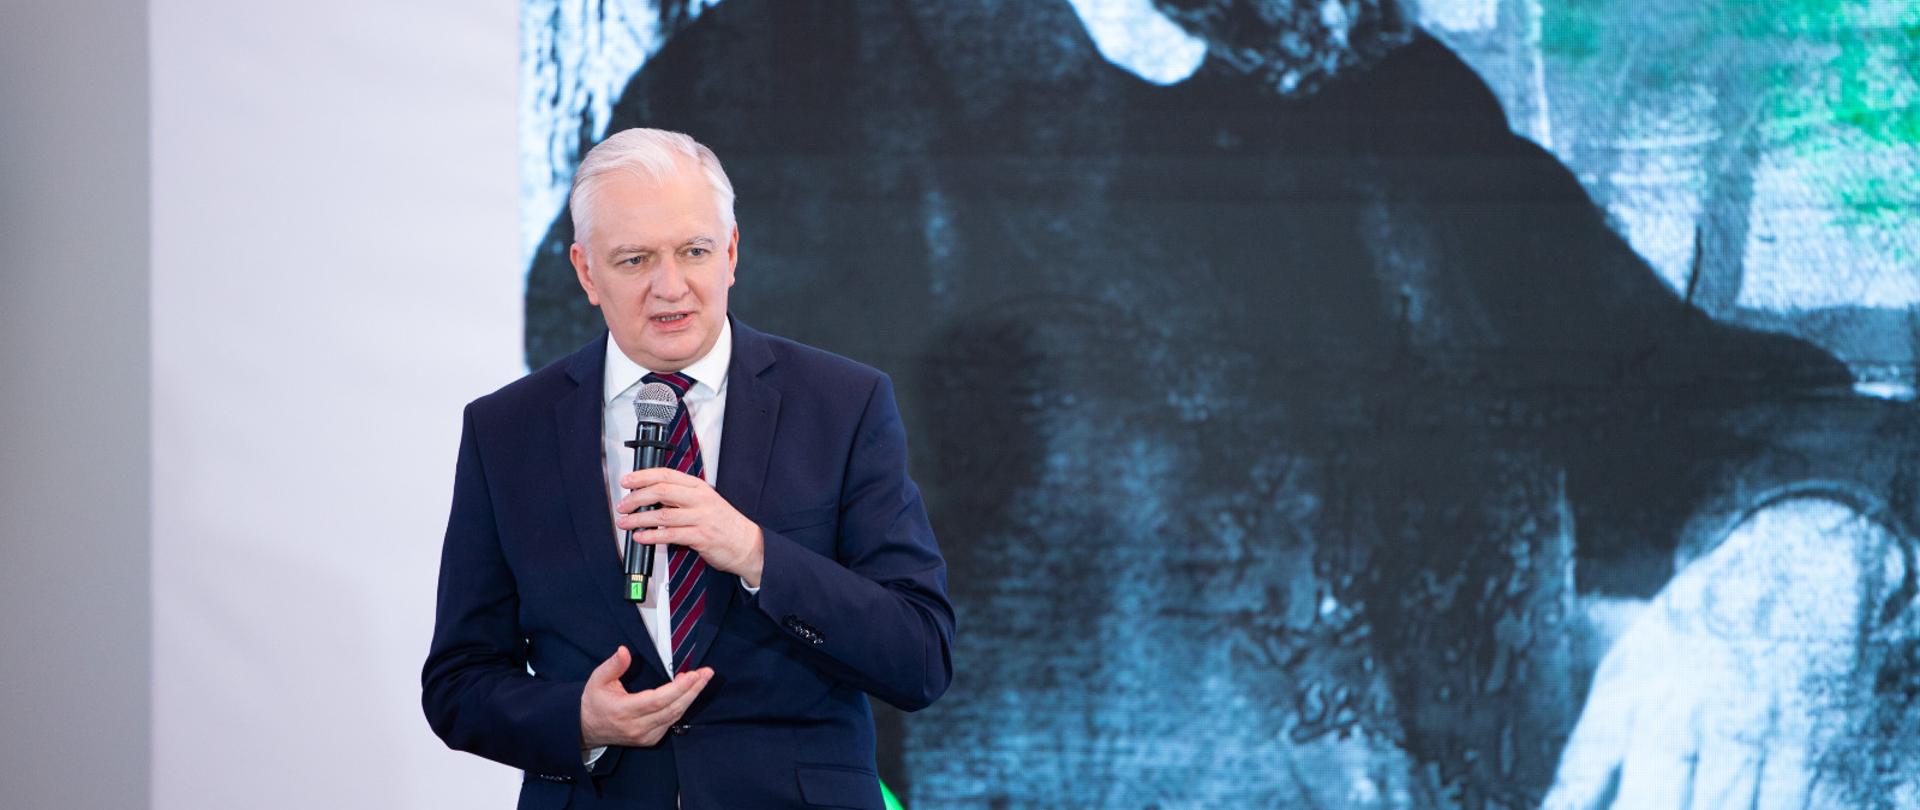 Wicepremier Jarosław Gowin wziął udział w konferencji z okazji 2. rocznicy powstania Sieci Badawczej Łukasiewicz